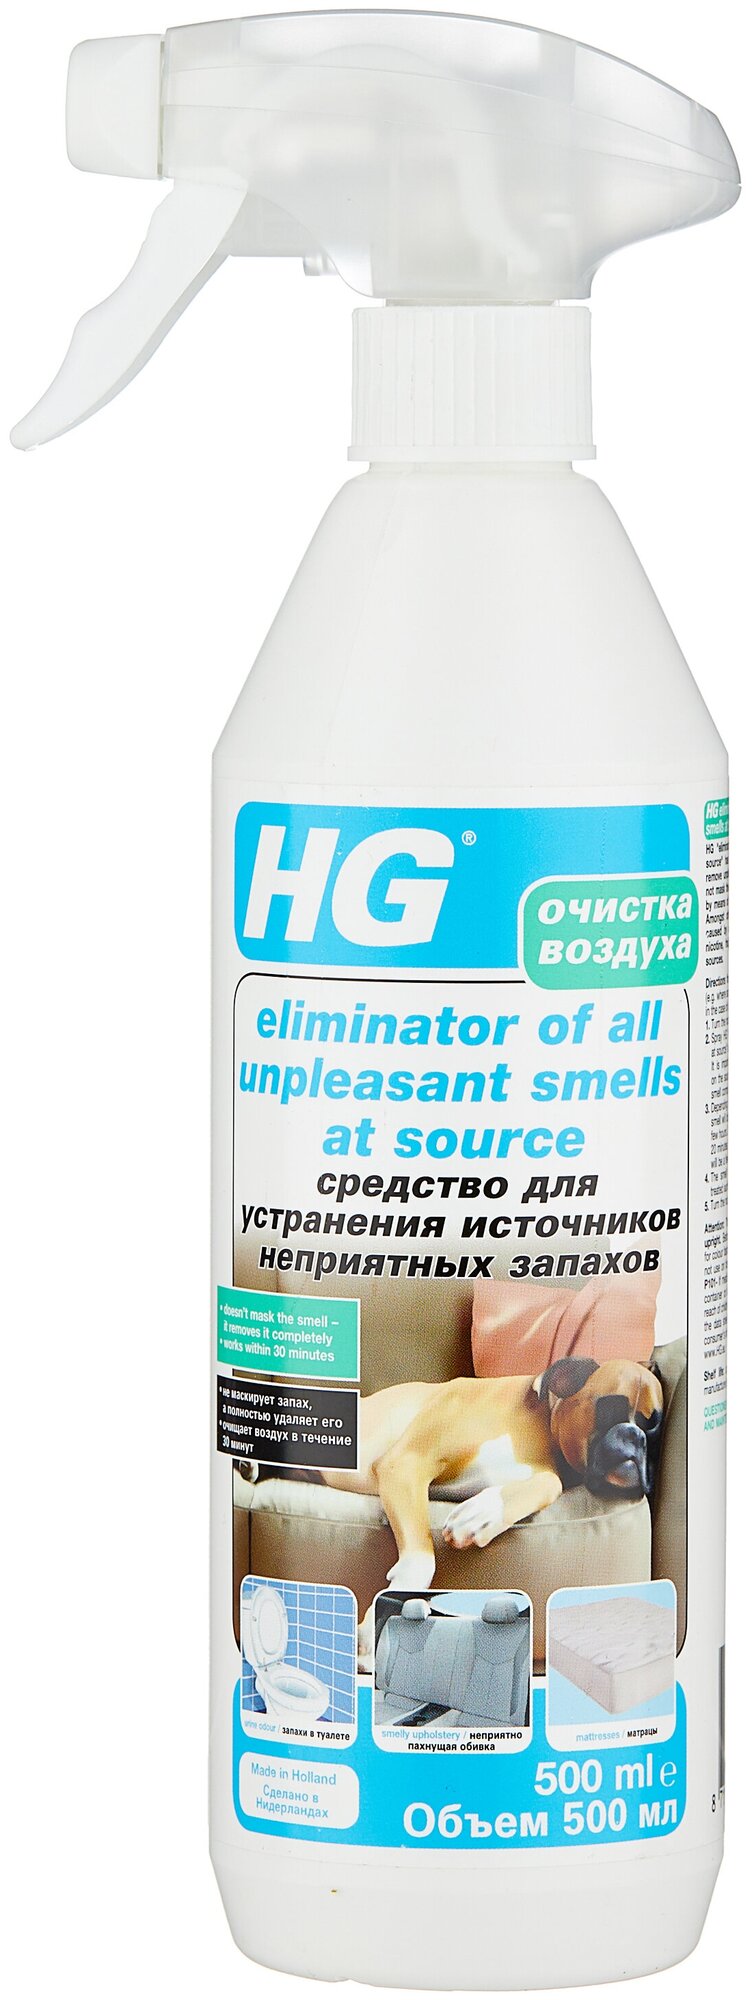 HG средство для устранения источников неприятных запахов 500 мл